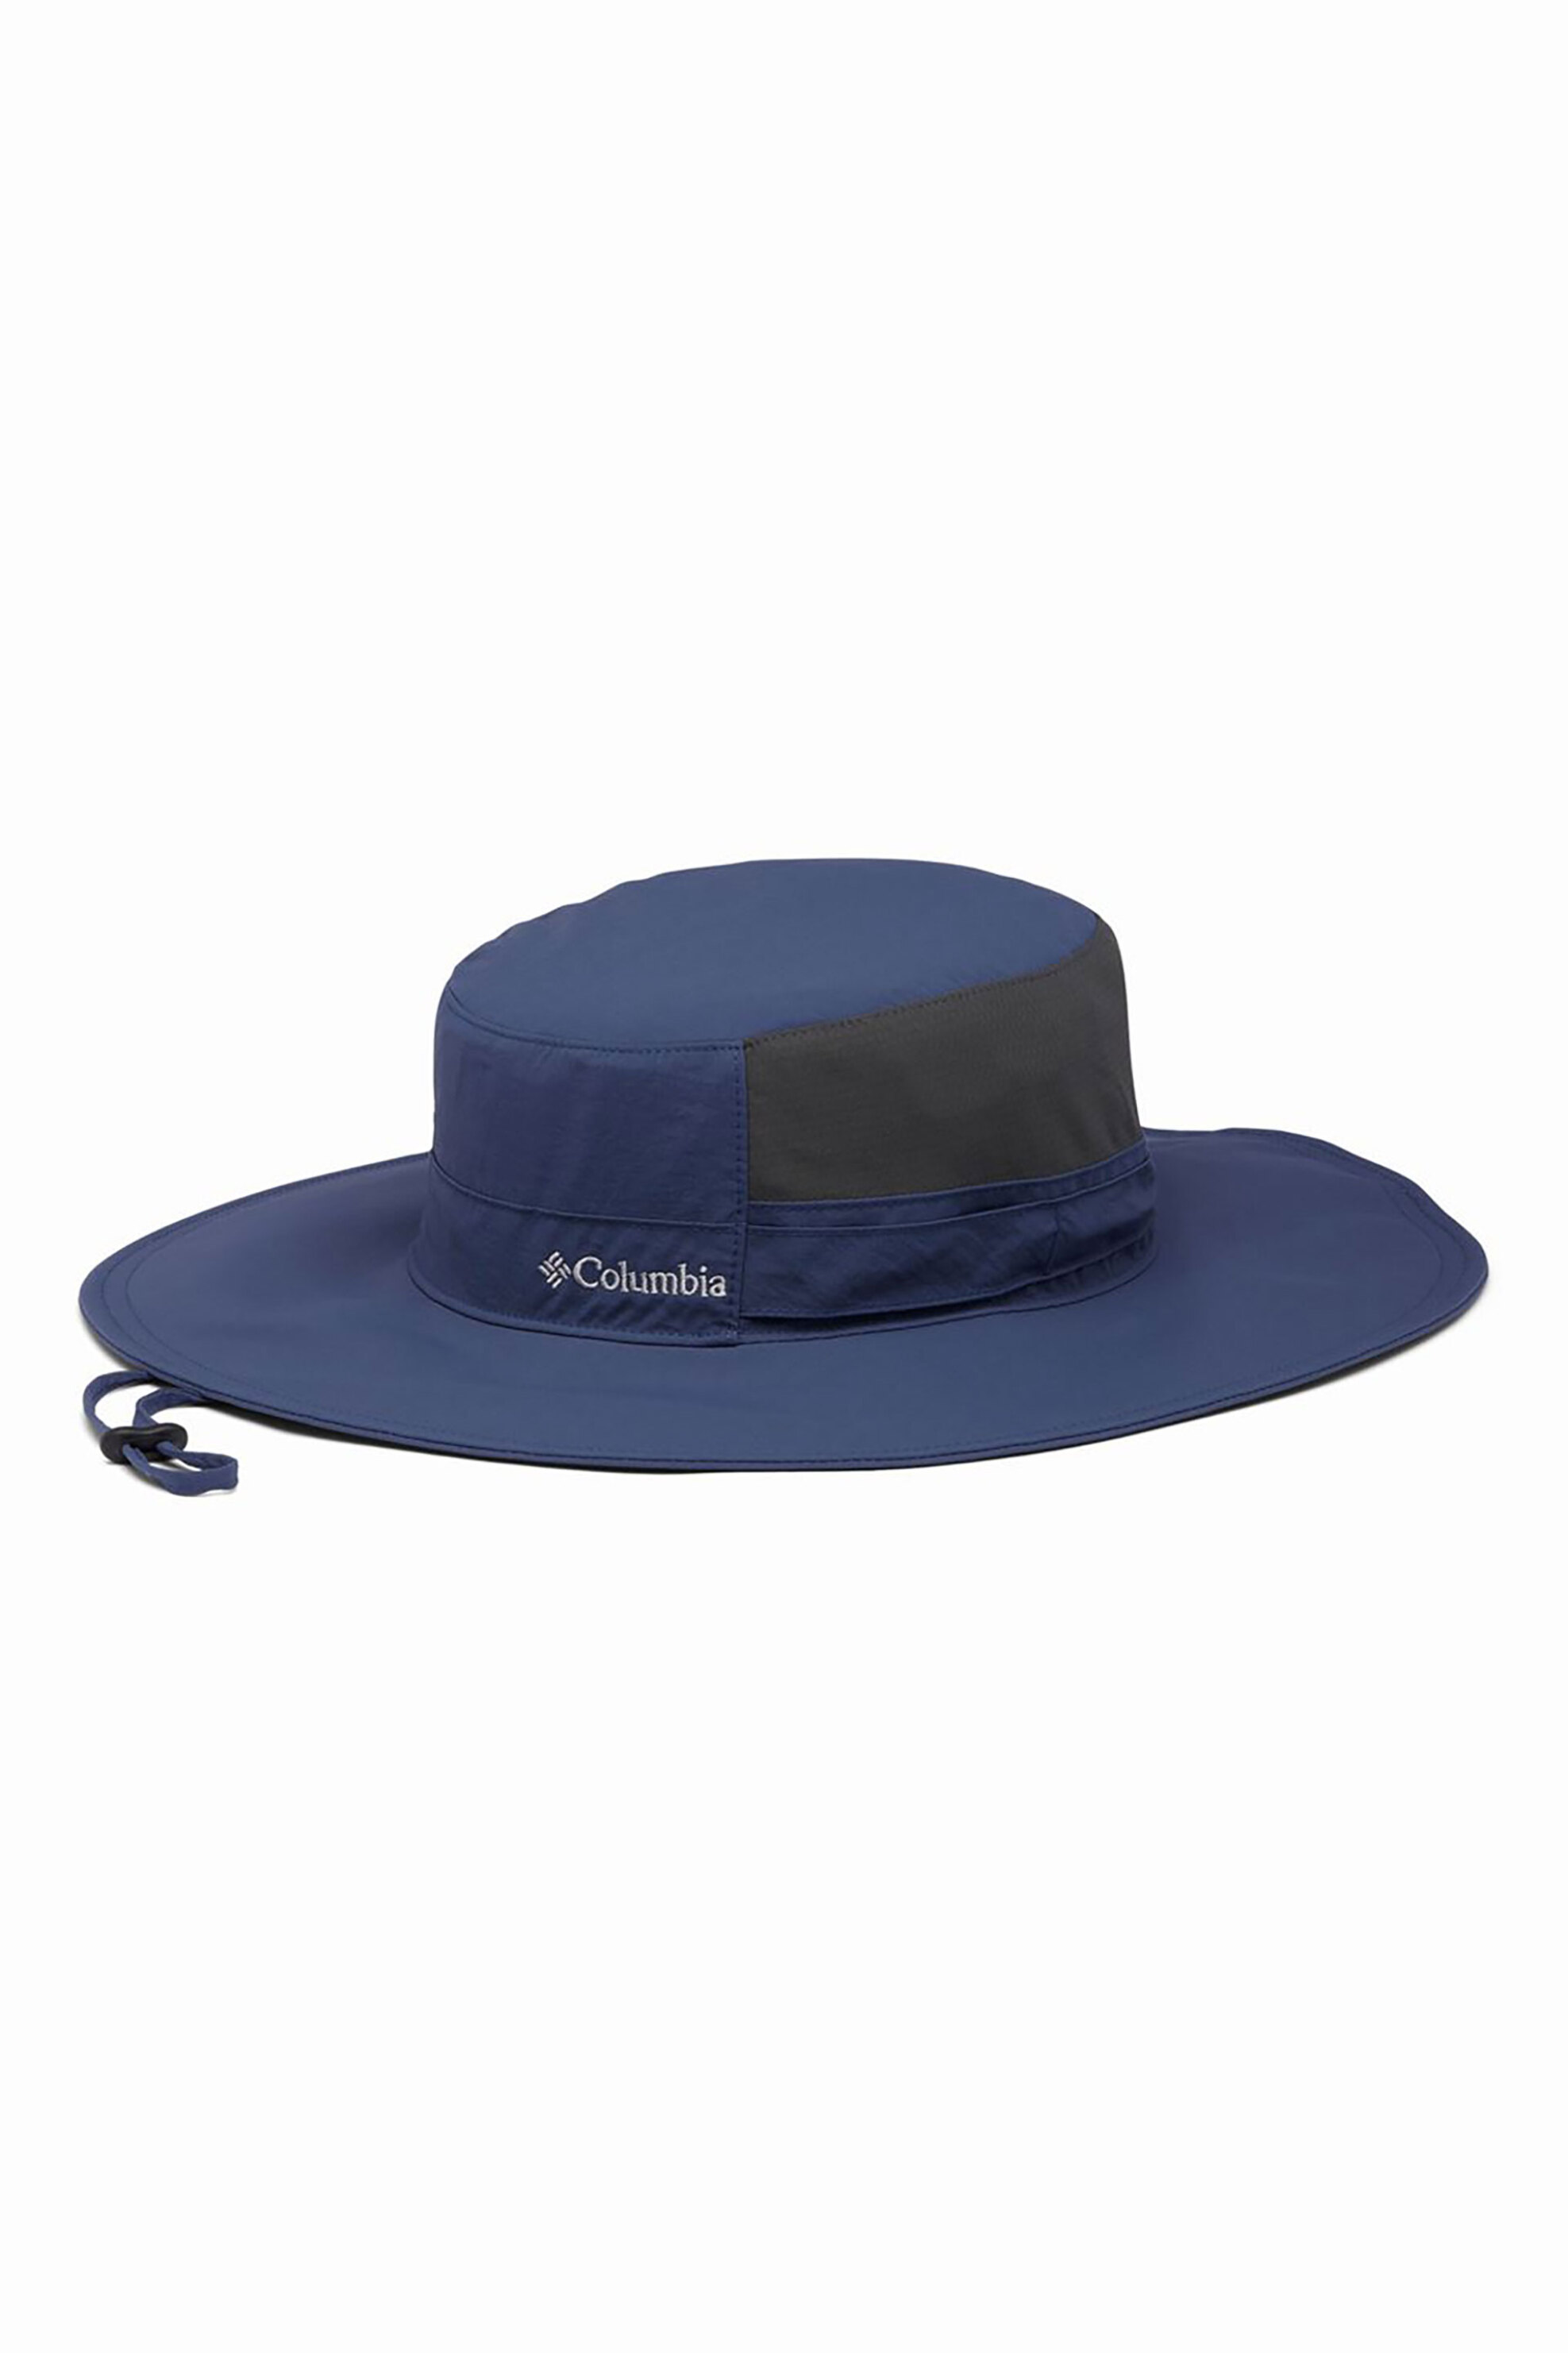 Ανδρική Μόδα > Ανδρικά Αξεσουάρ > Ανδρικά Καπέλα & Σκούφοι Columbia unisex καπέλο μονόχρωμο με κεντημένο λογότυπο "Coolhead II Zero" - 2101061591TEM Μπλε